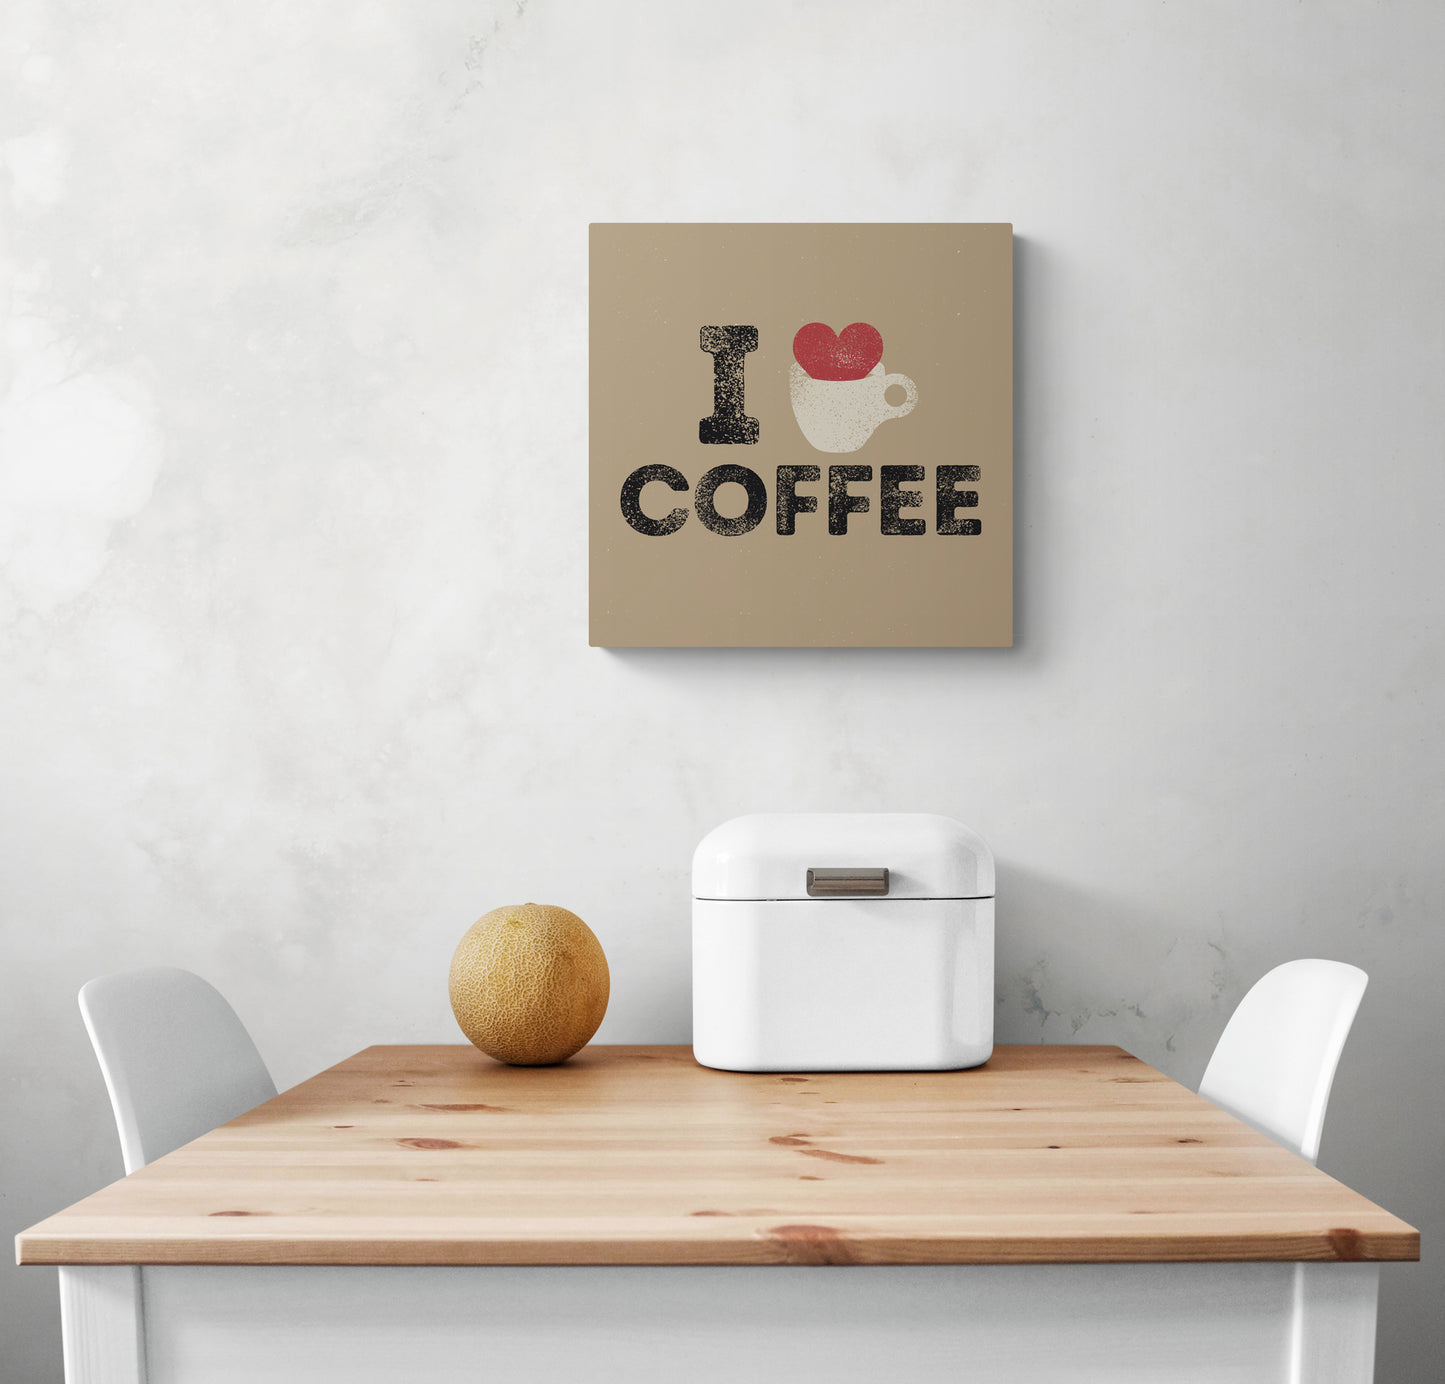 Tableau mural cuisine beige avec une illustration d'un cœur rouge qui déborde d'une tasse de café et une inscription en noir i love café, accroché sur un mur blanc